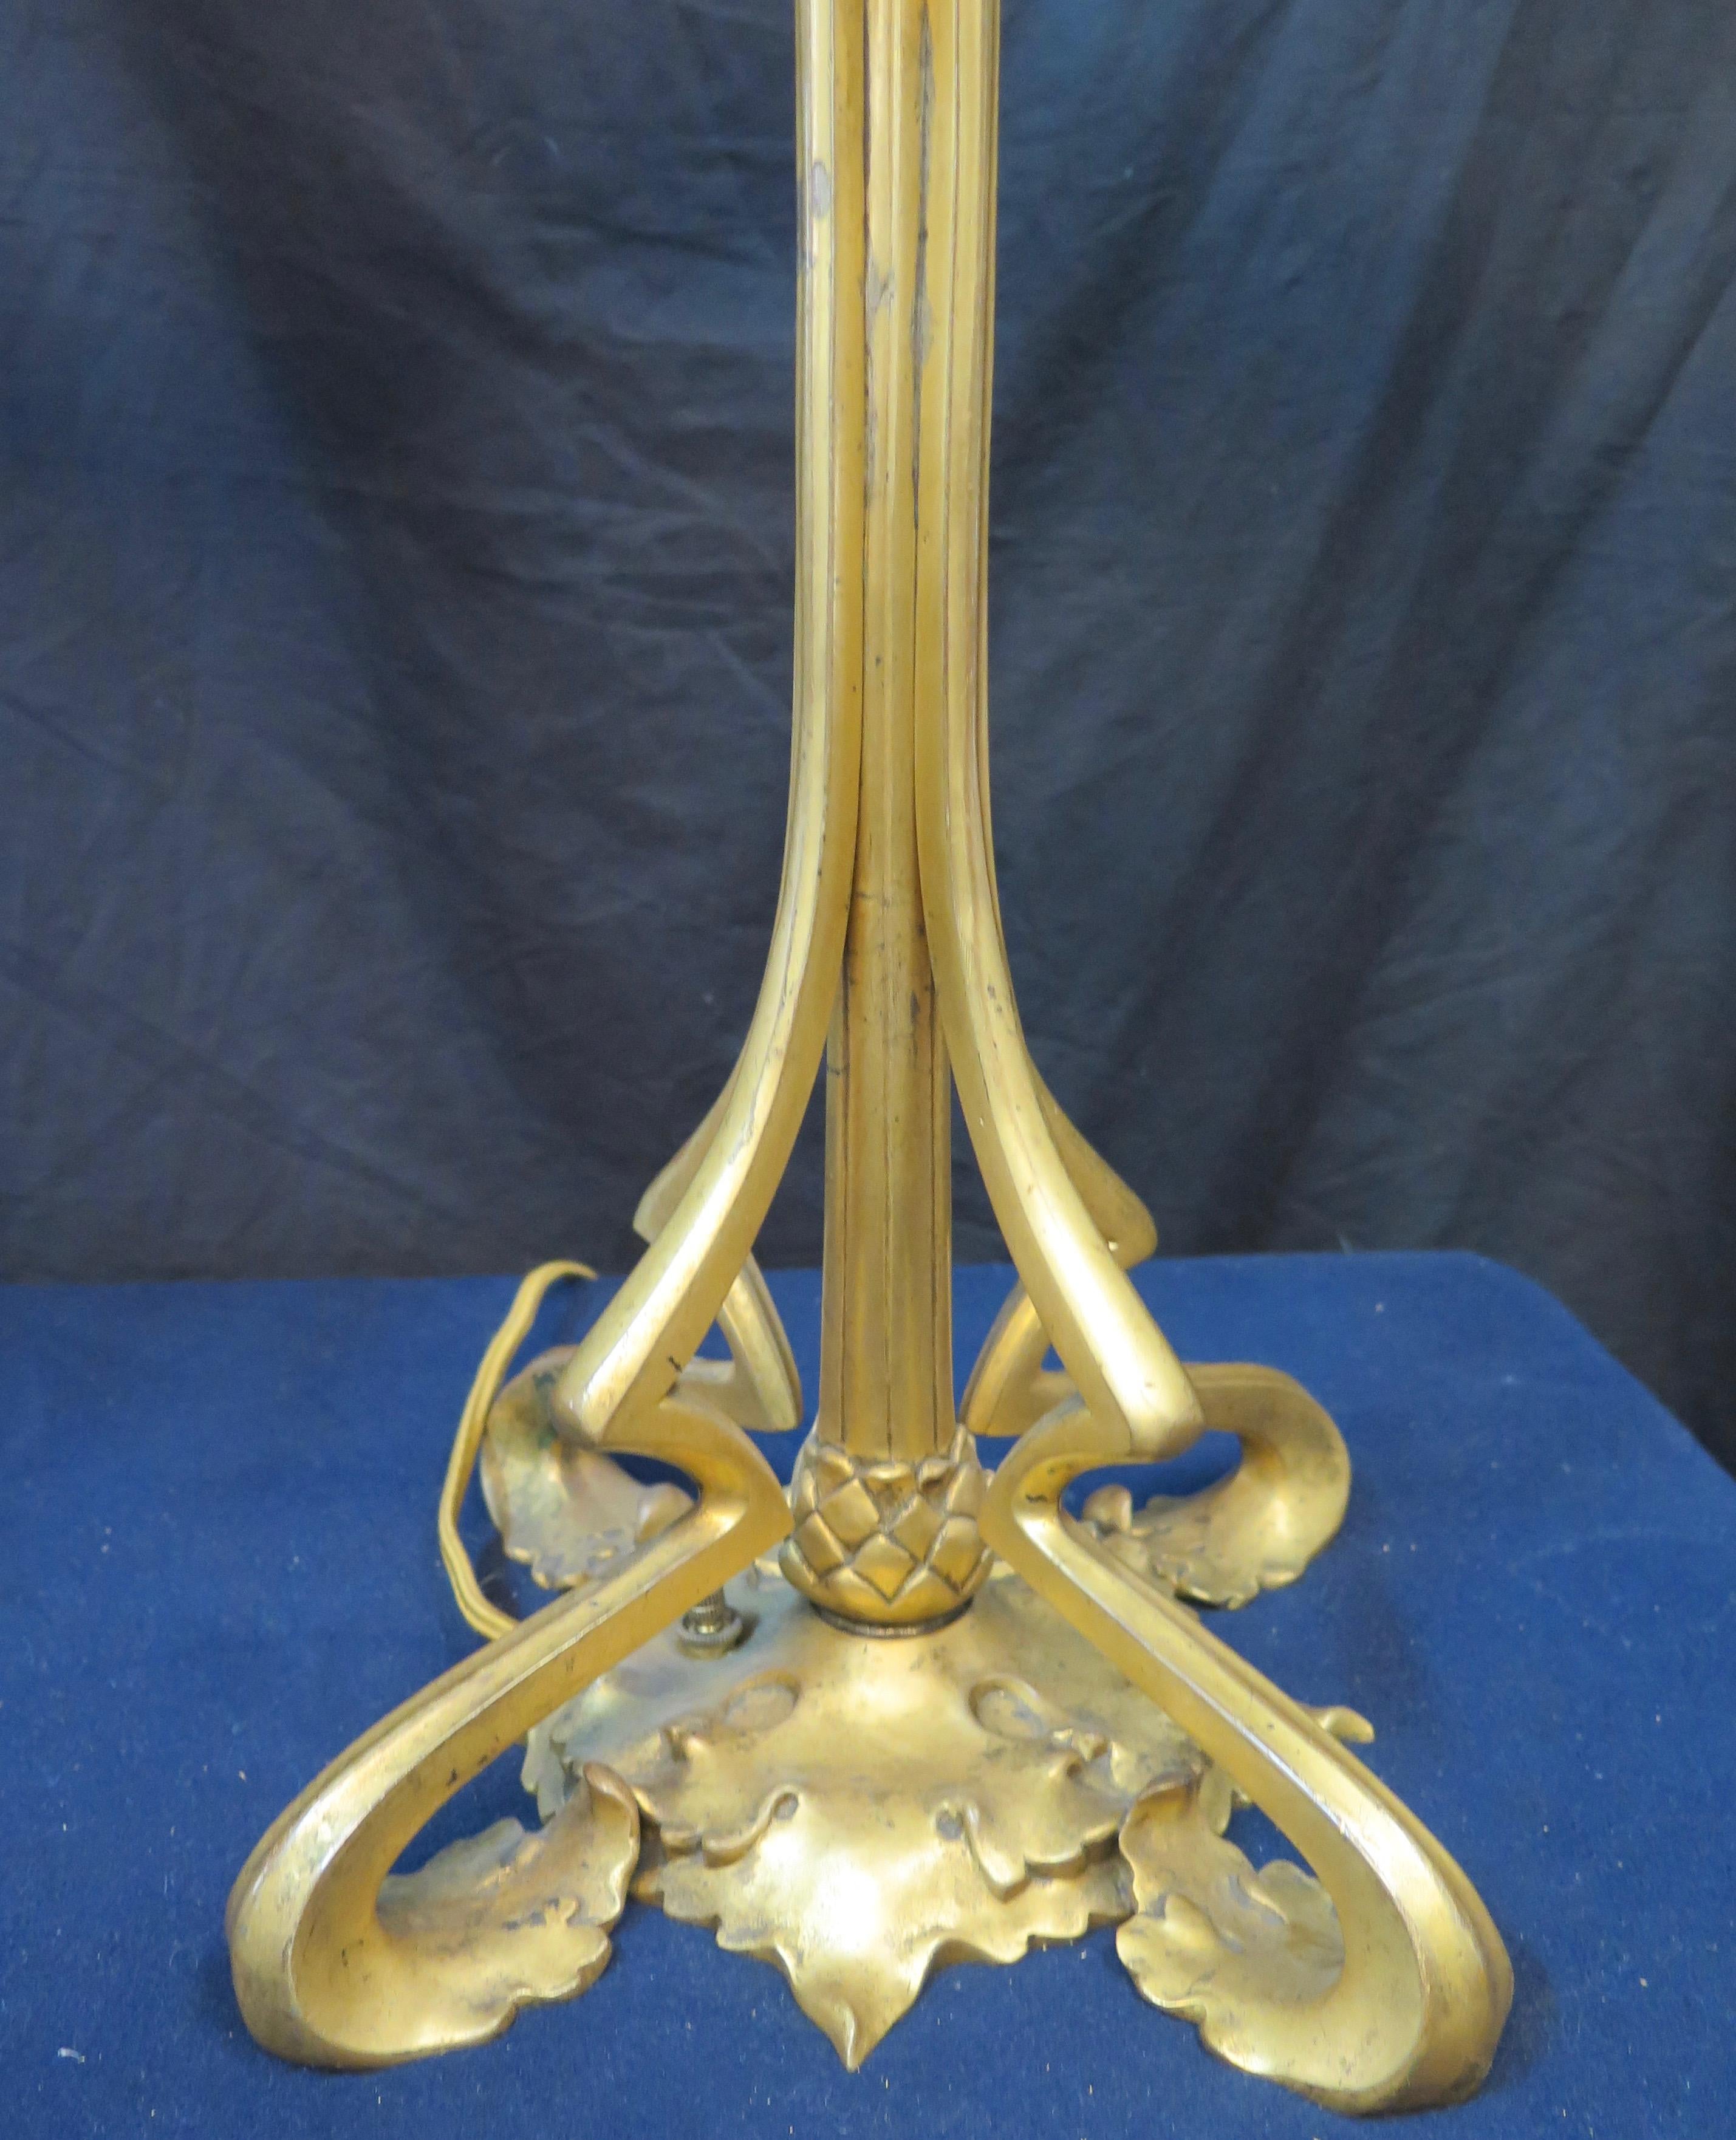 Vintage Doré Bronze and Alabaster Art Nouveau Period Lamps Pair For Sale 3